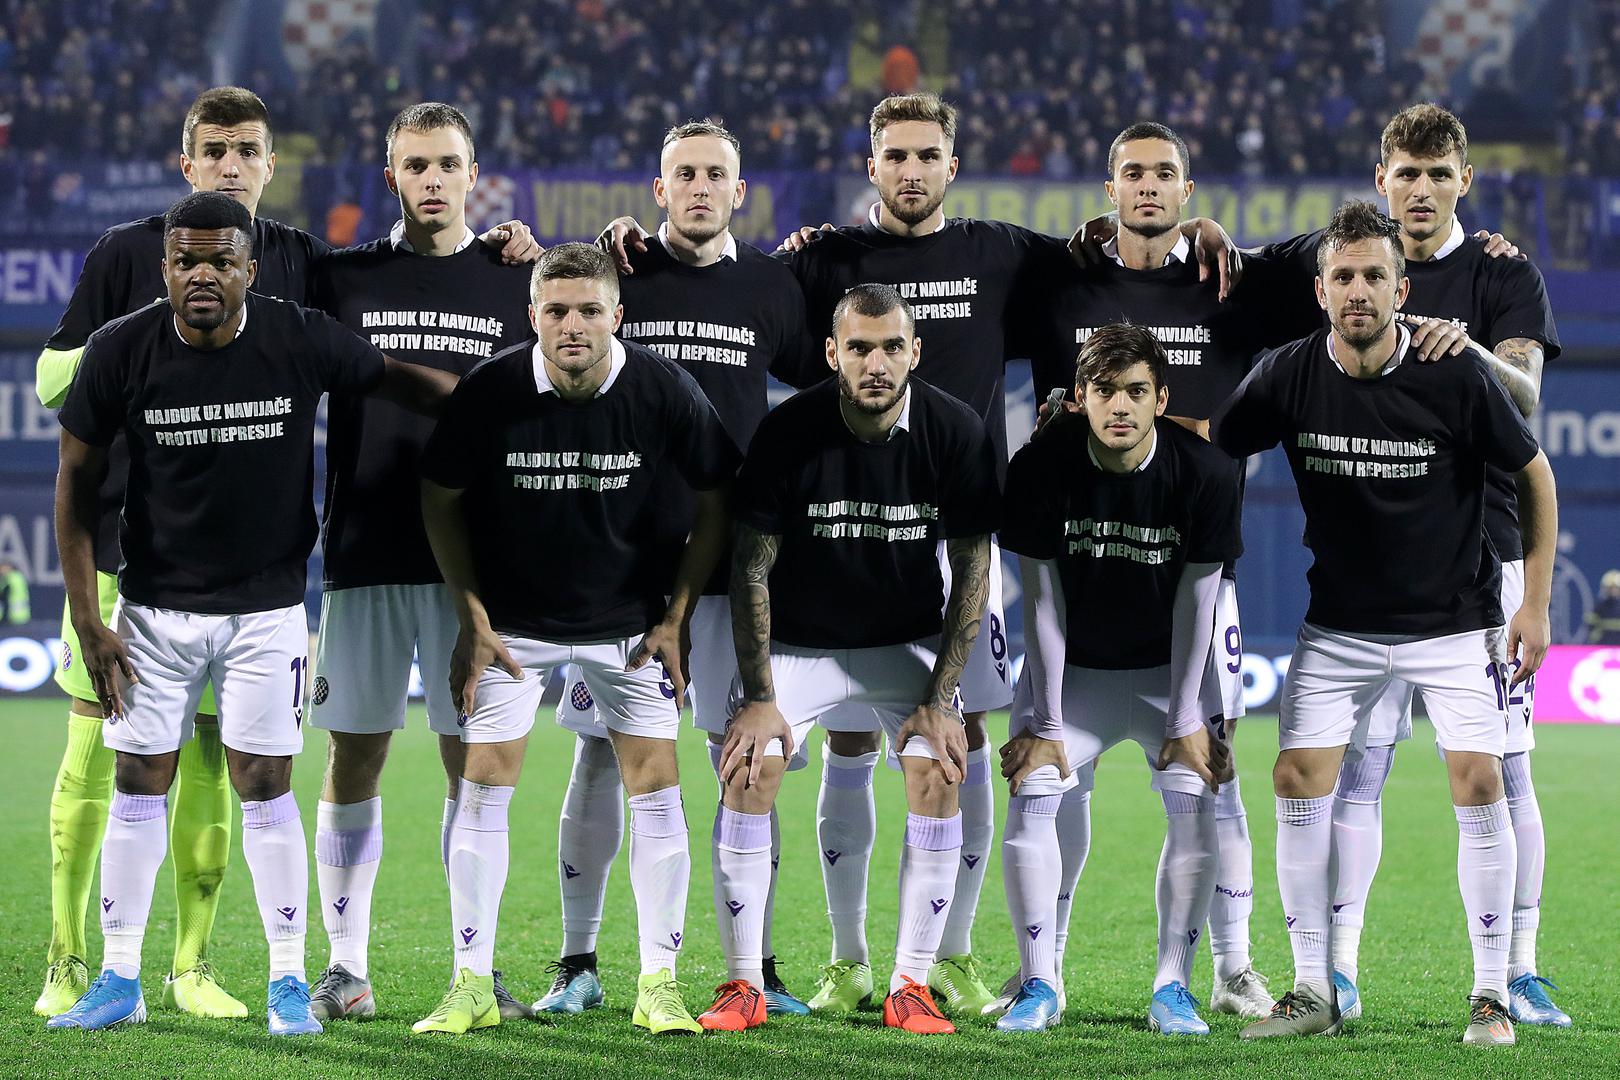 Nogometaši Hajduka na trene su izašli u posebnim, crnim majicama na kojima je pisalo "kontra mraku, kontra sili". Tako su dali podršku Torcidi koja se bori protiv postroženja Zakona o navijačima.